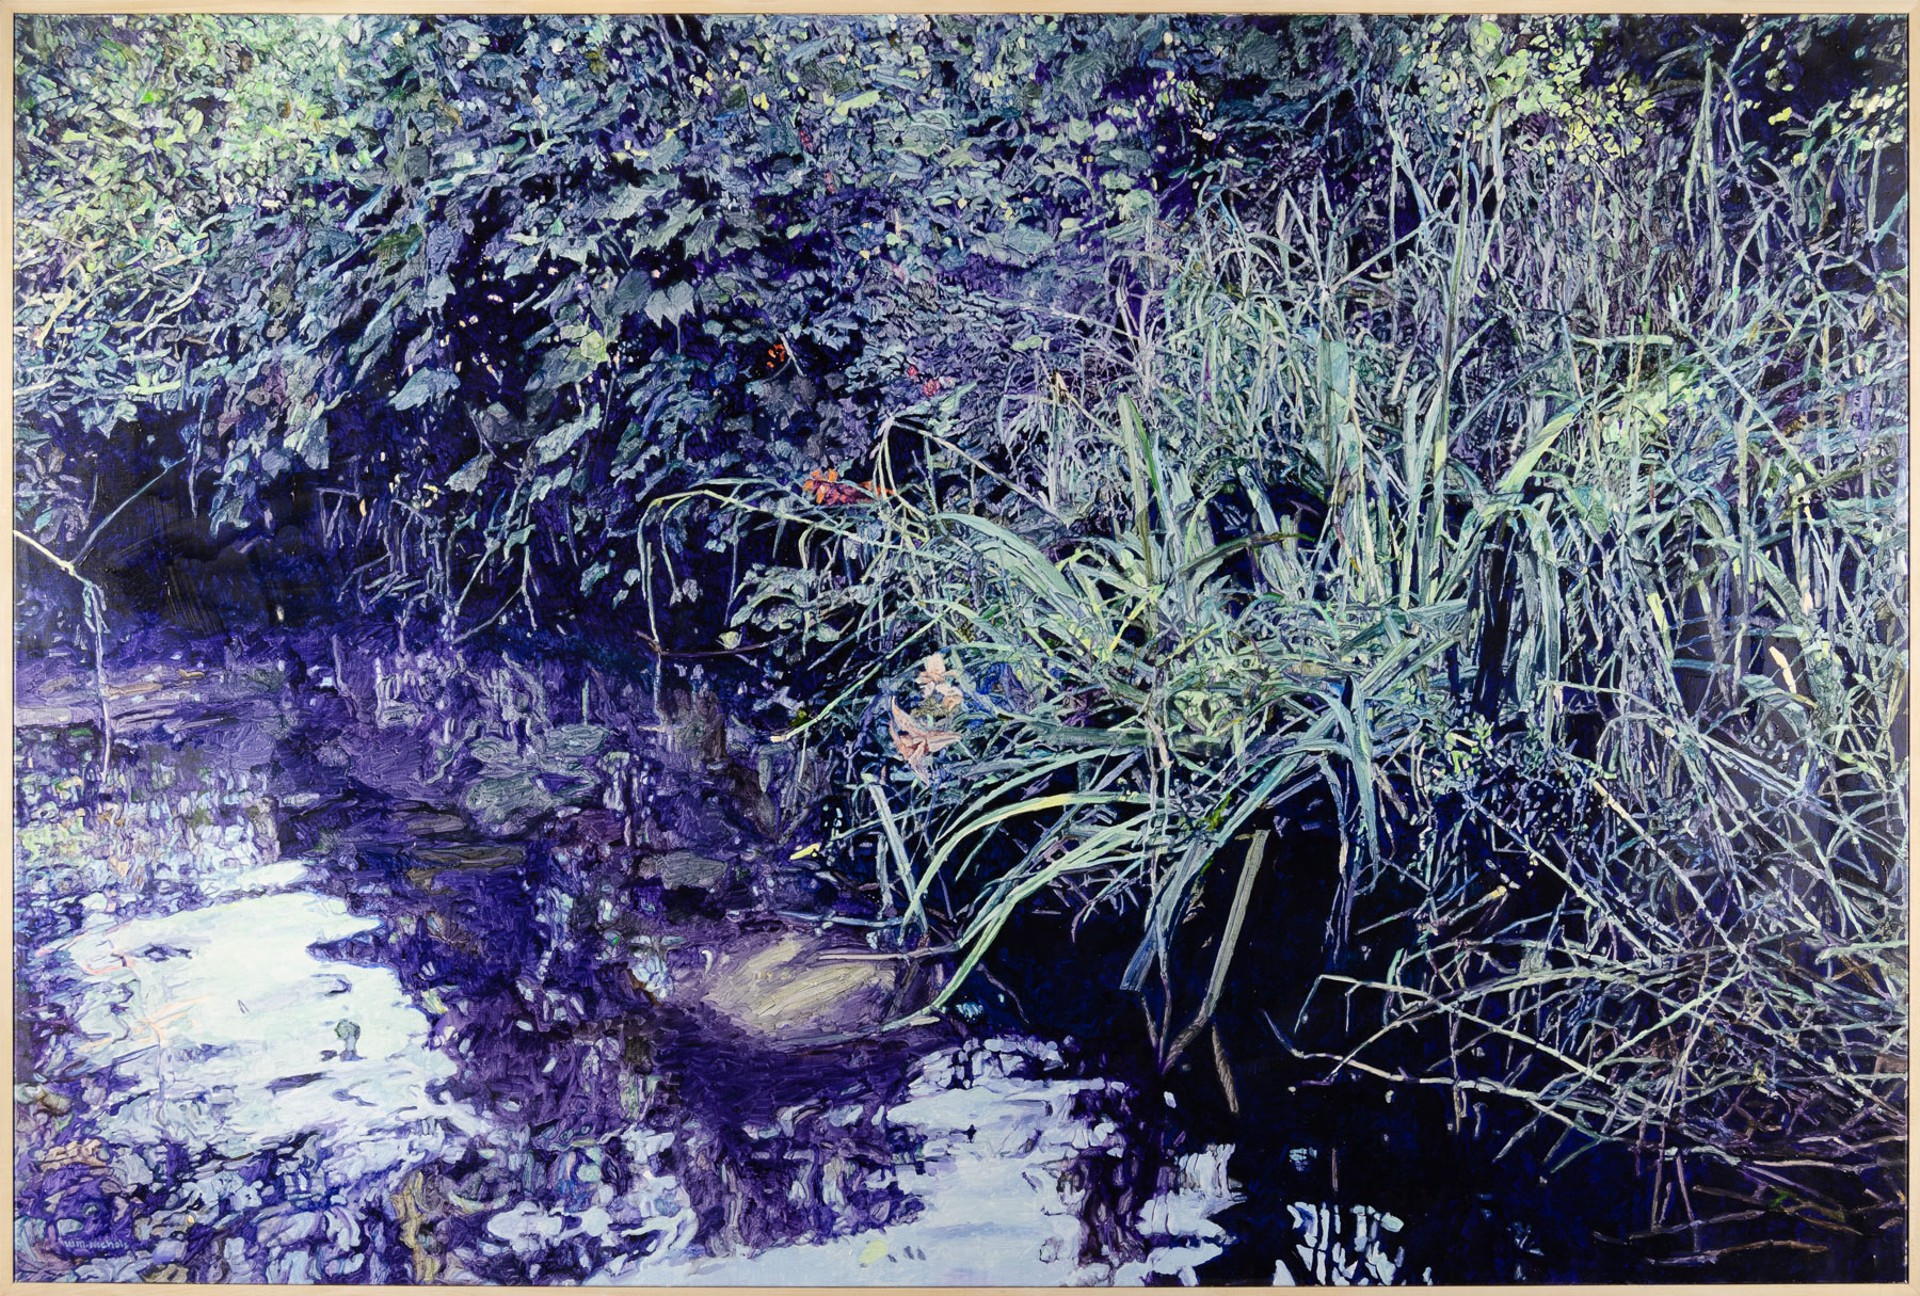 Bullfrog Creek by William Nichols